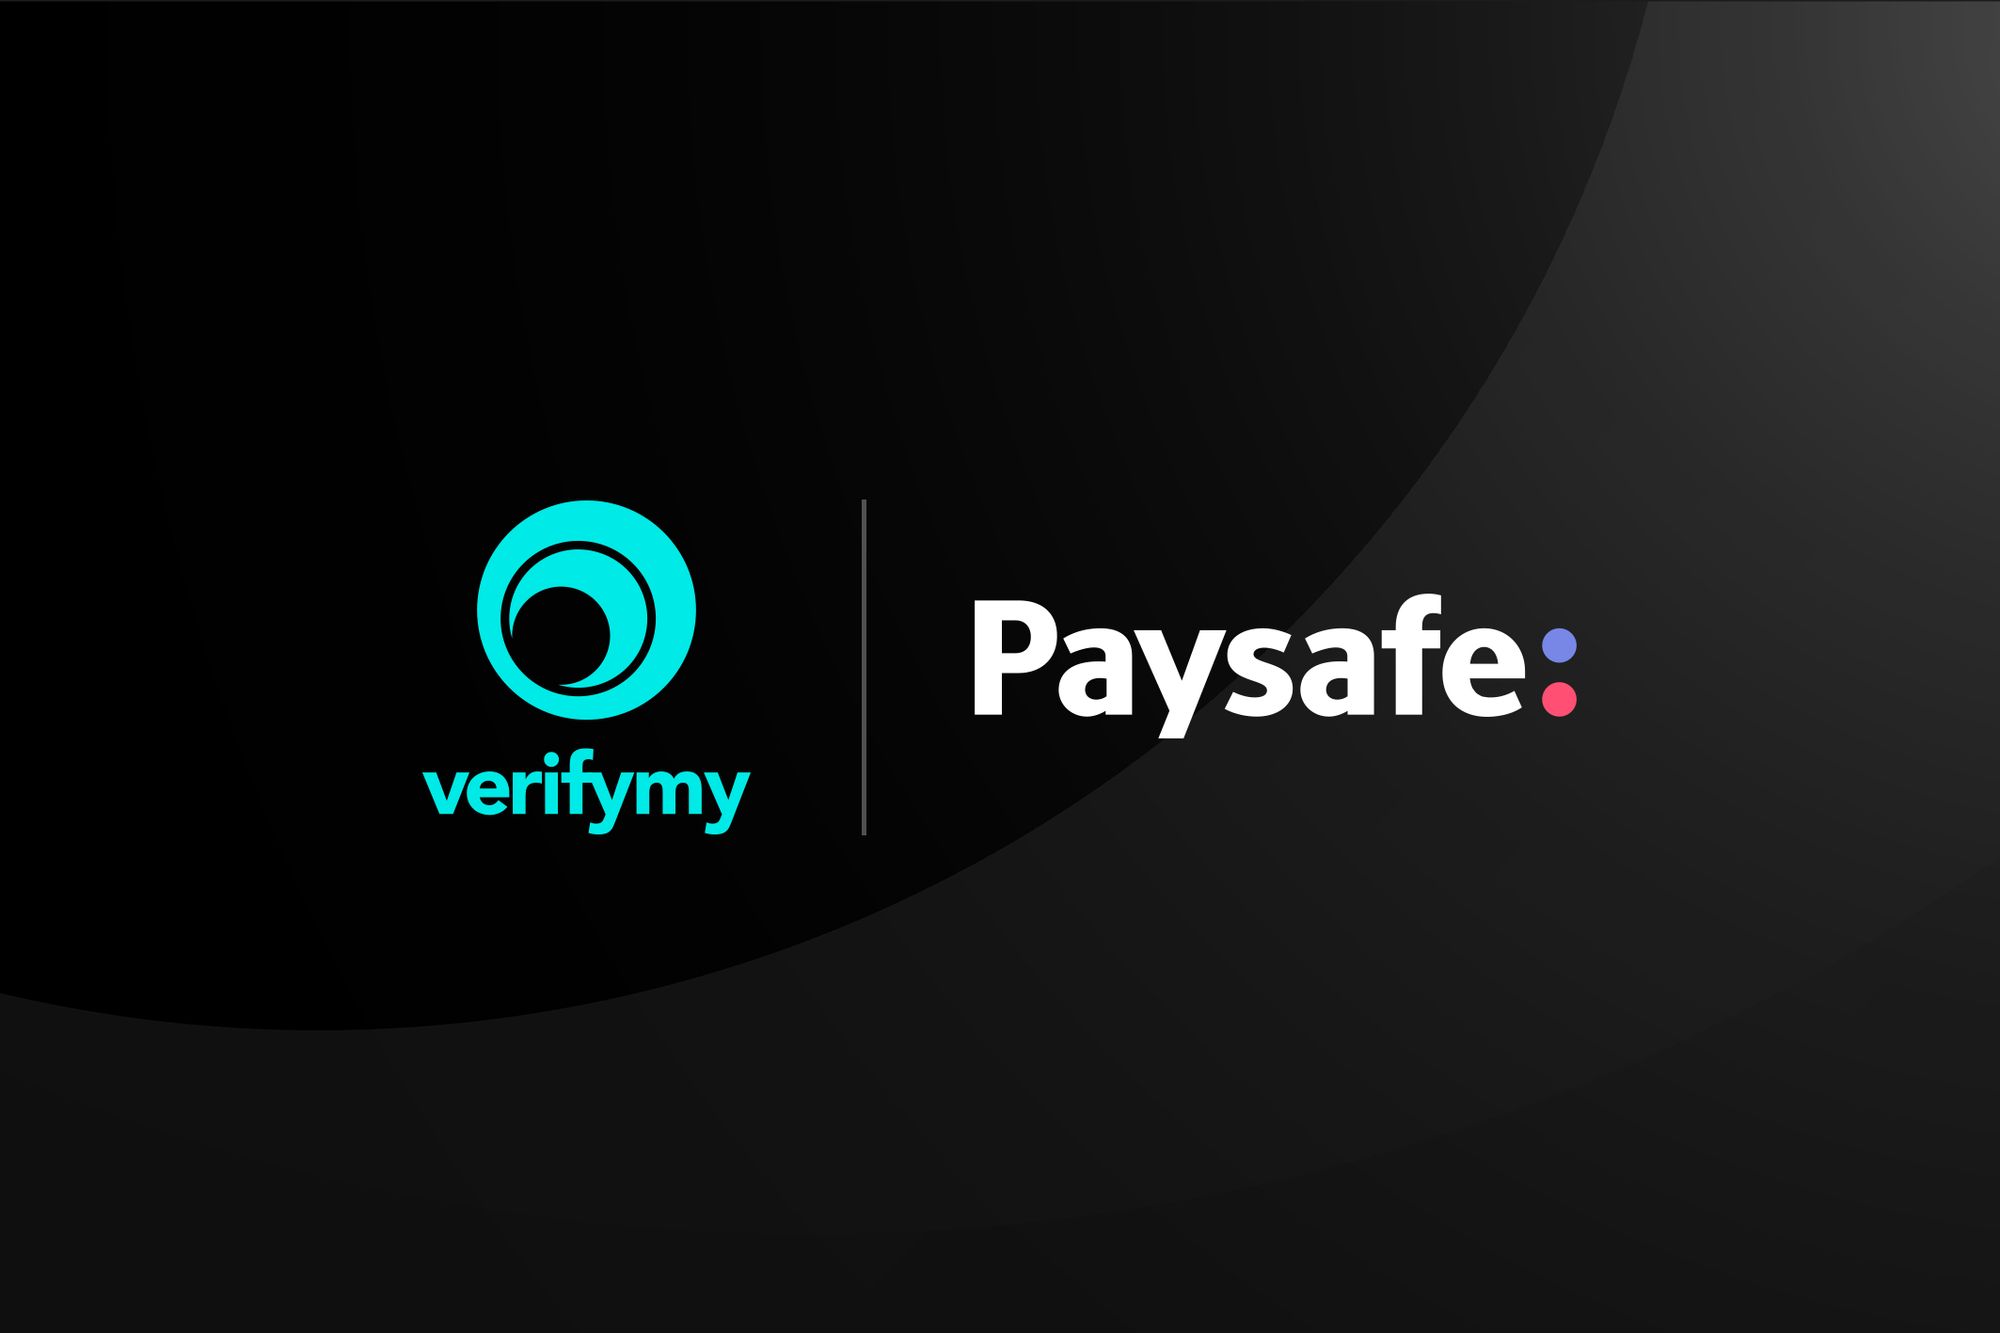 Paysafe partners with VerifyMy